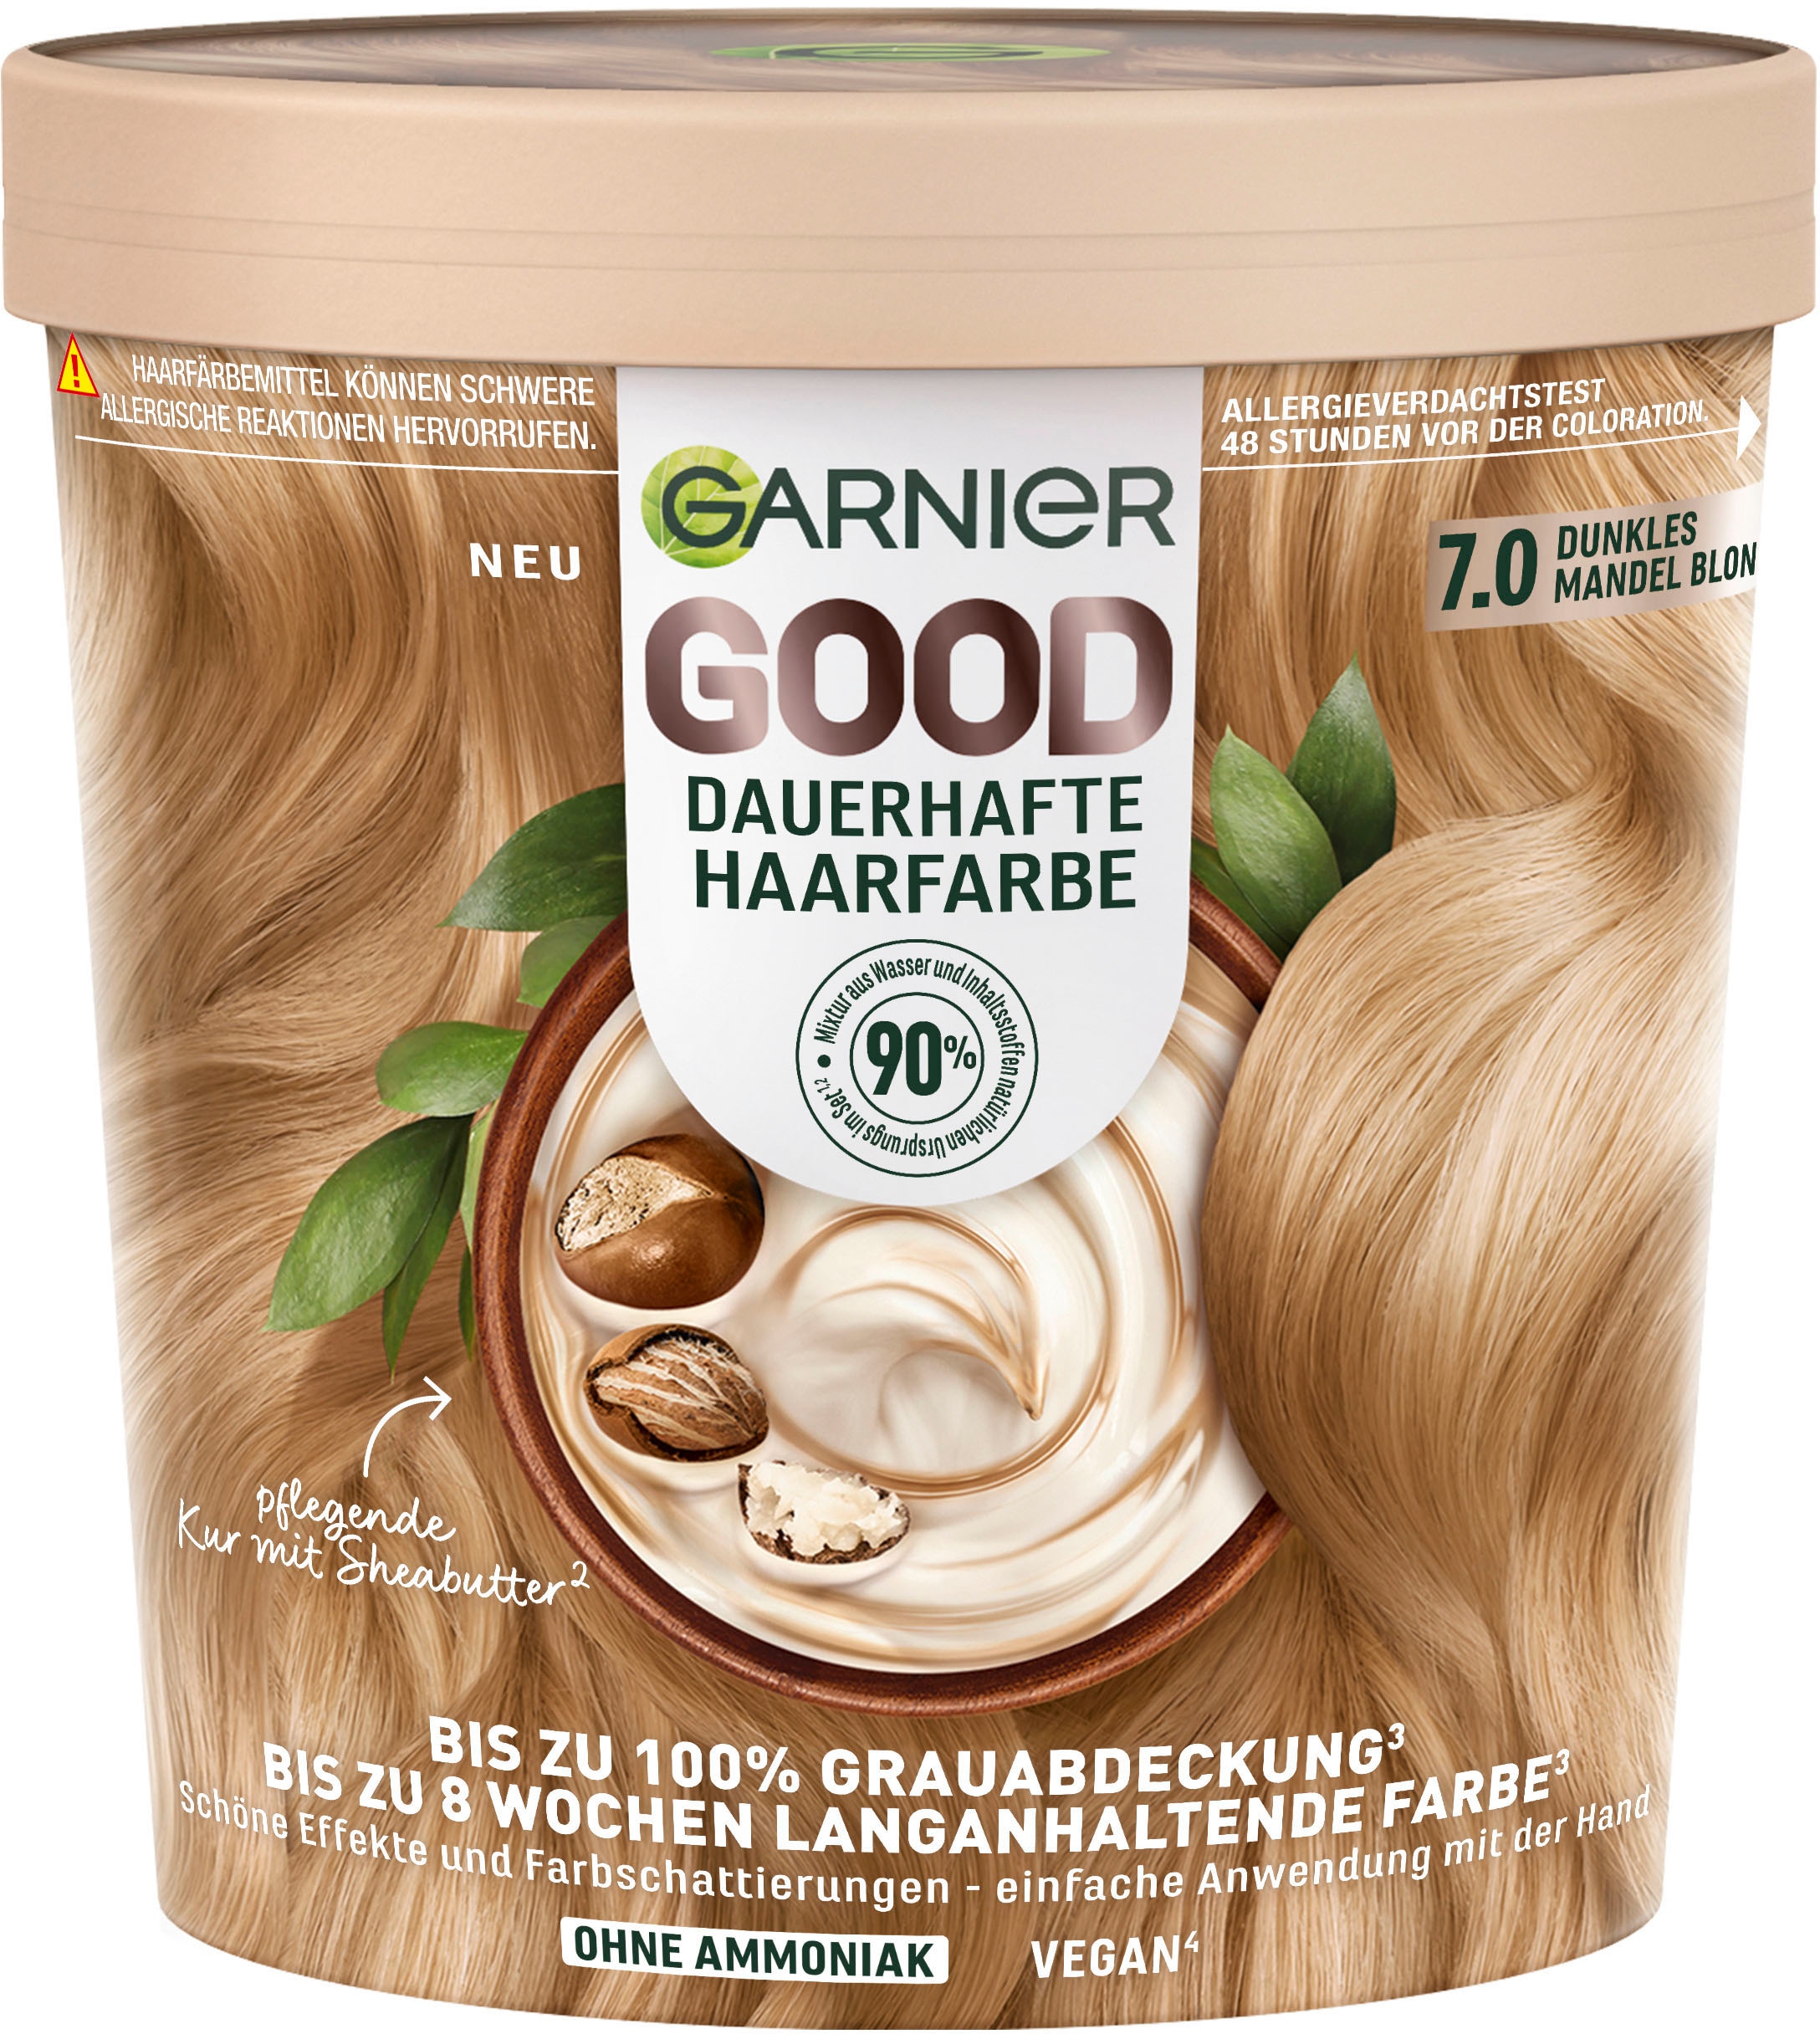 GARNIER Online »Garnier Shop OTTO Haarfarbe« im GOOD Dauerhafte Coloration